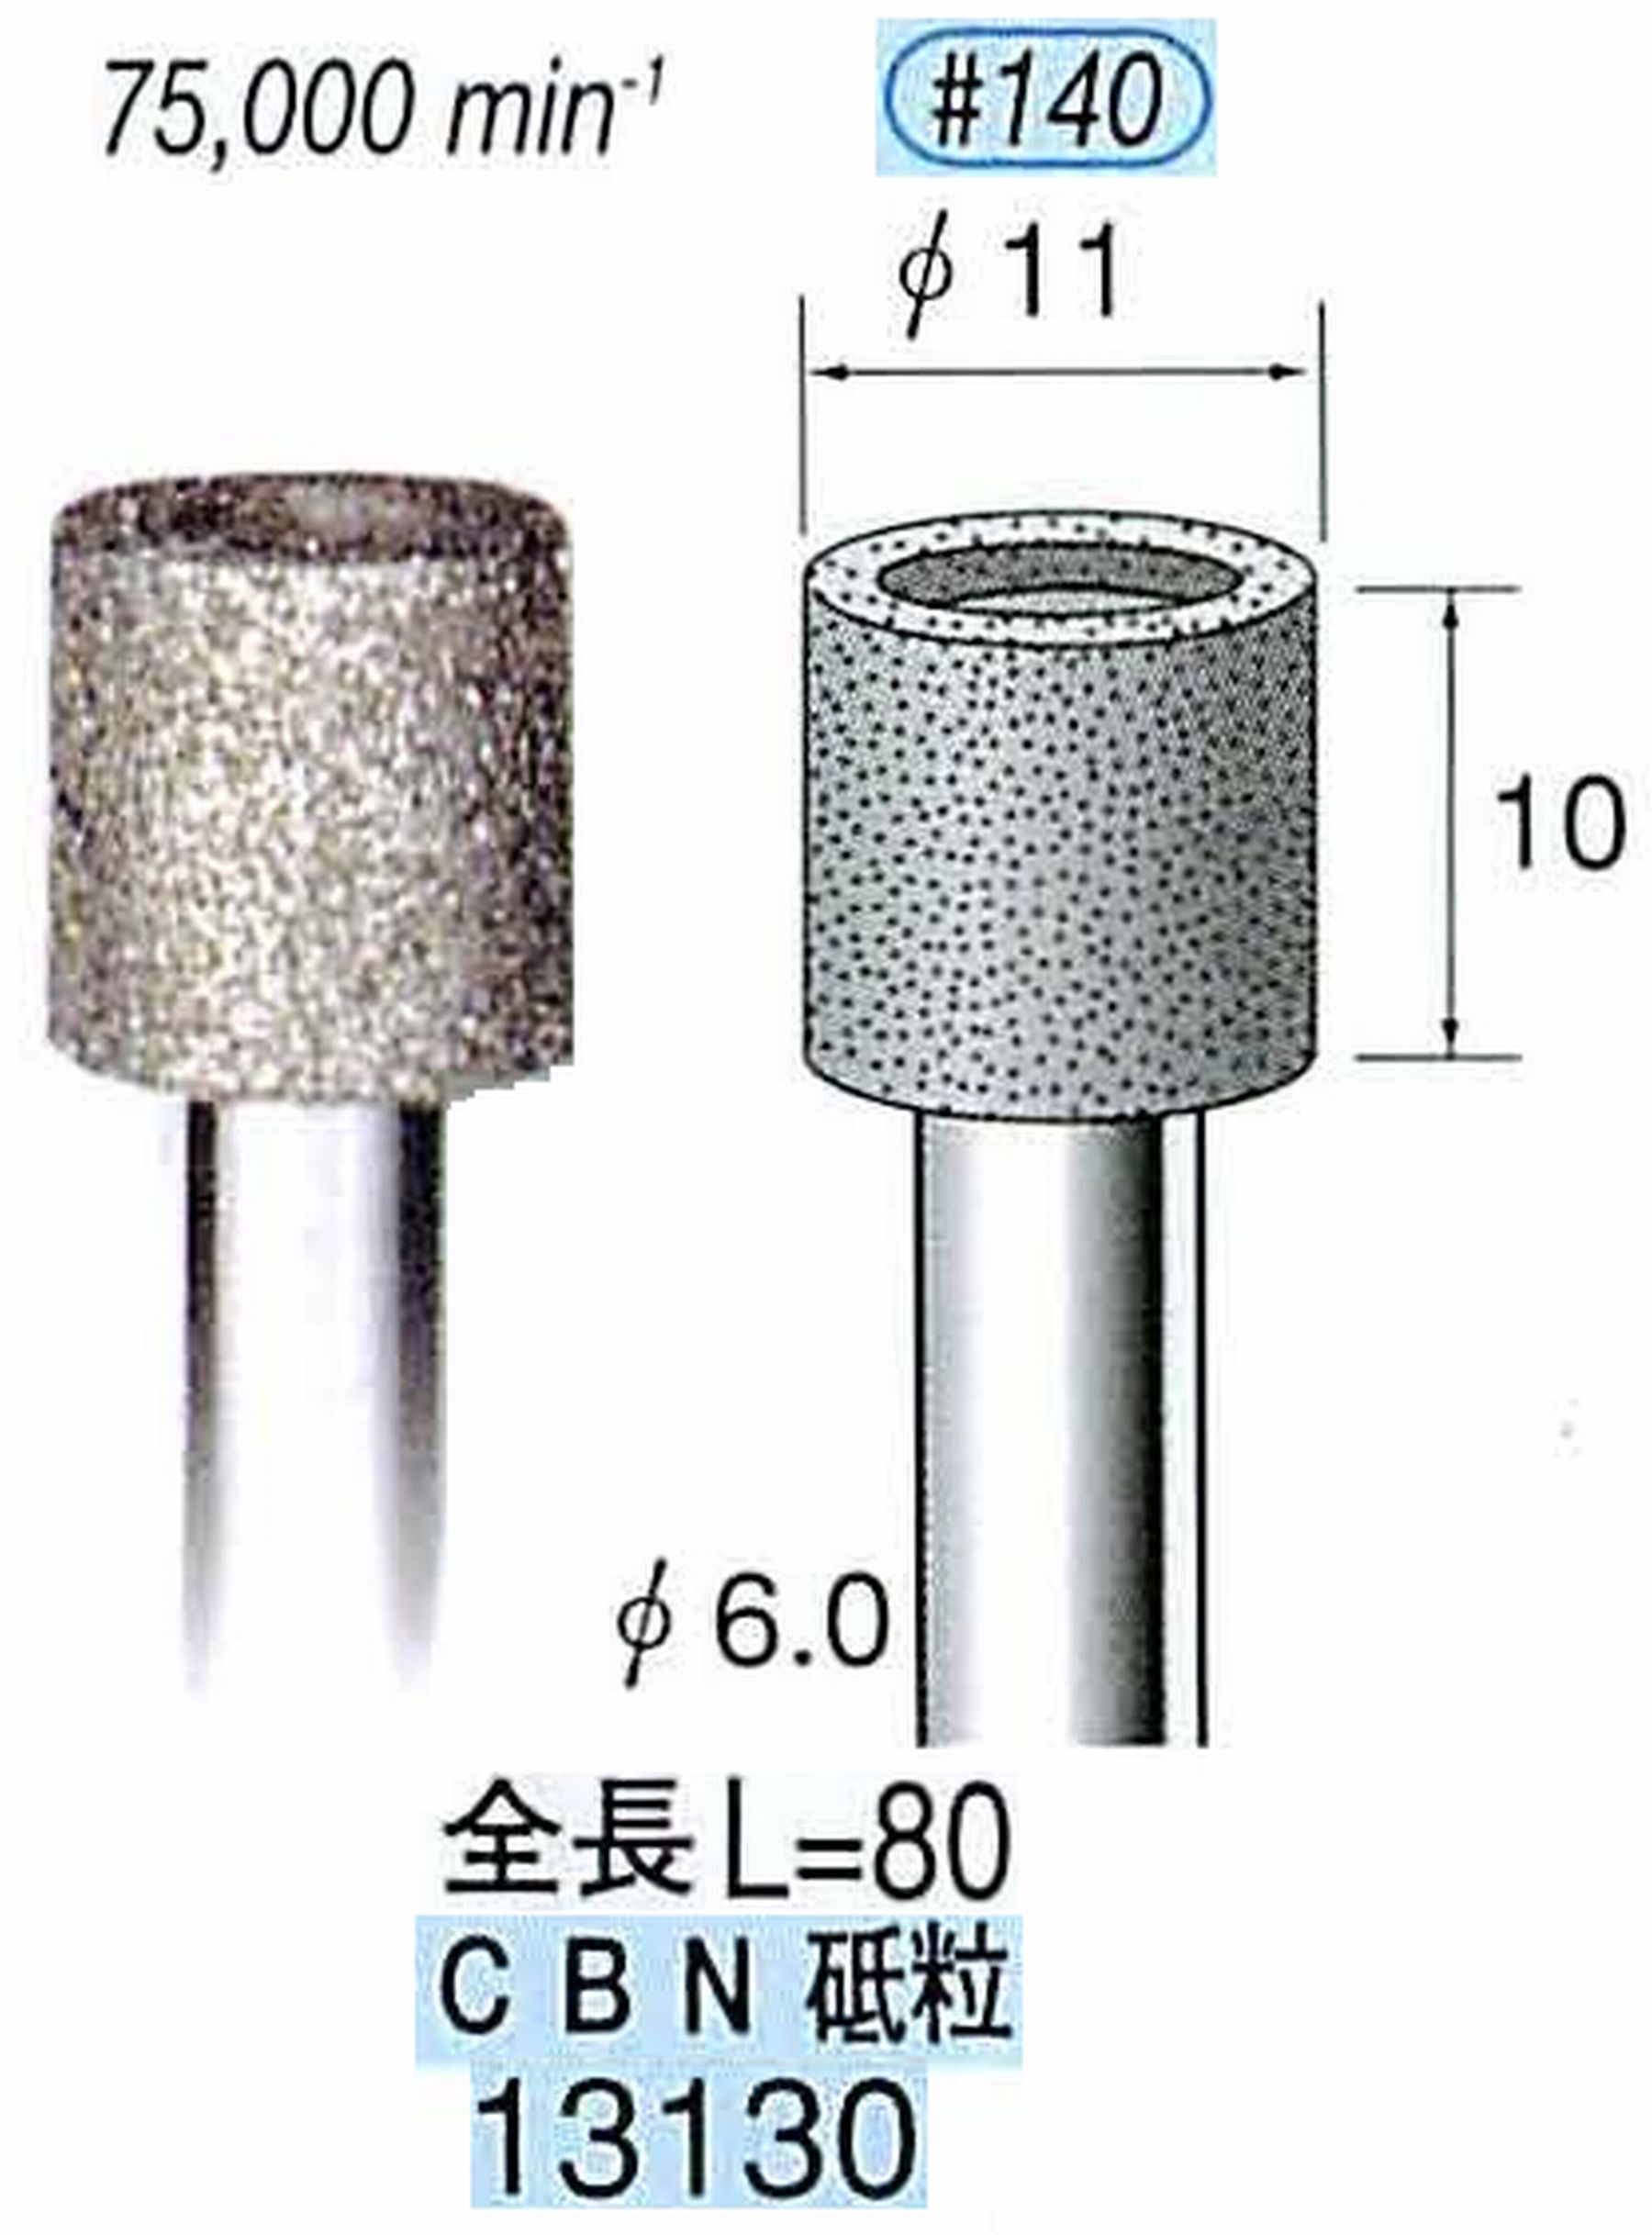 ナカニシ/NAKANISHI 電着CBNバー CBN砥粒 軸径(シャンク)φ6.0mm 13130